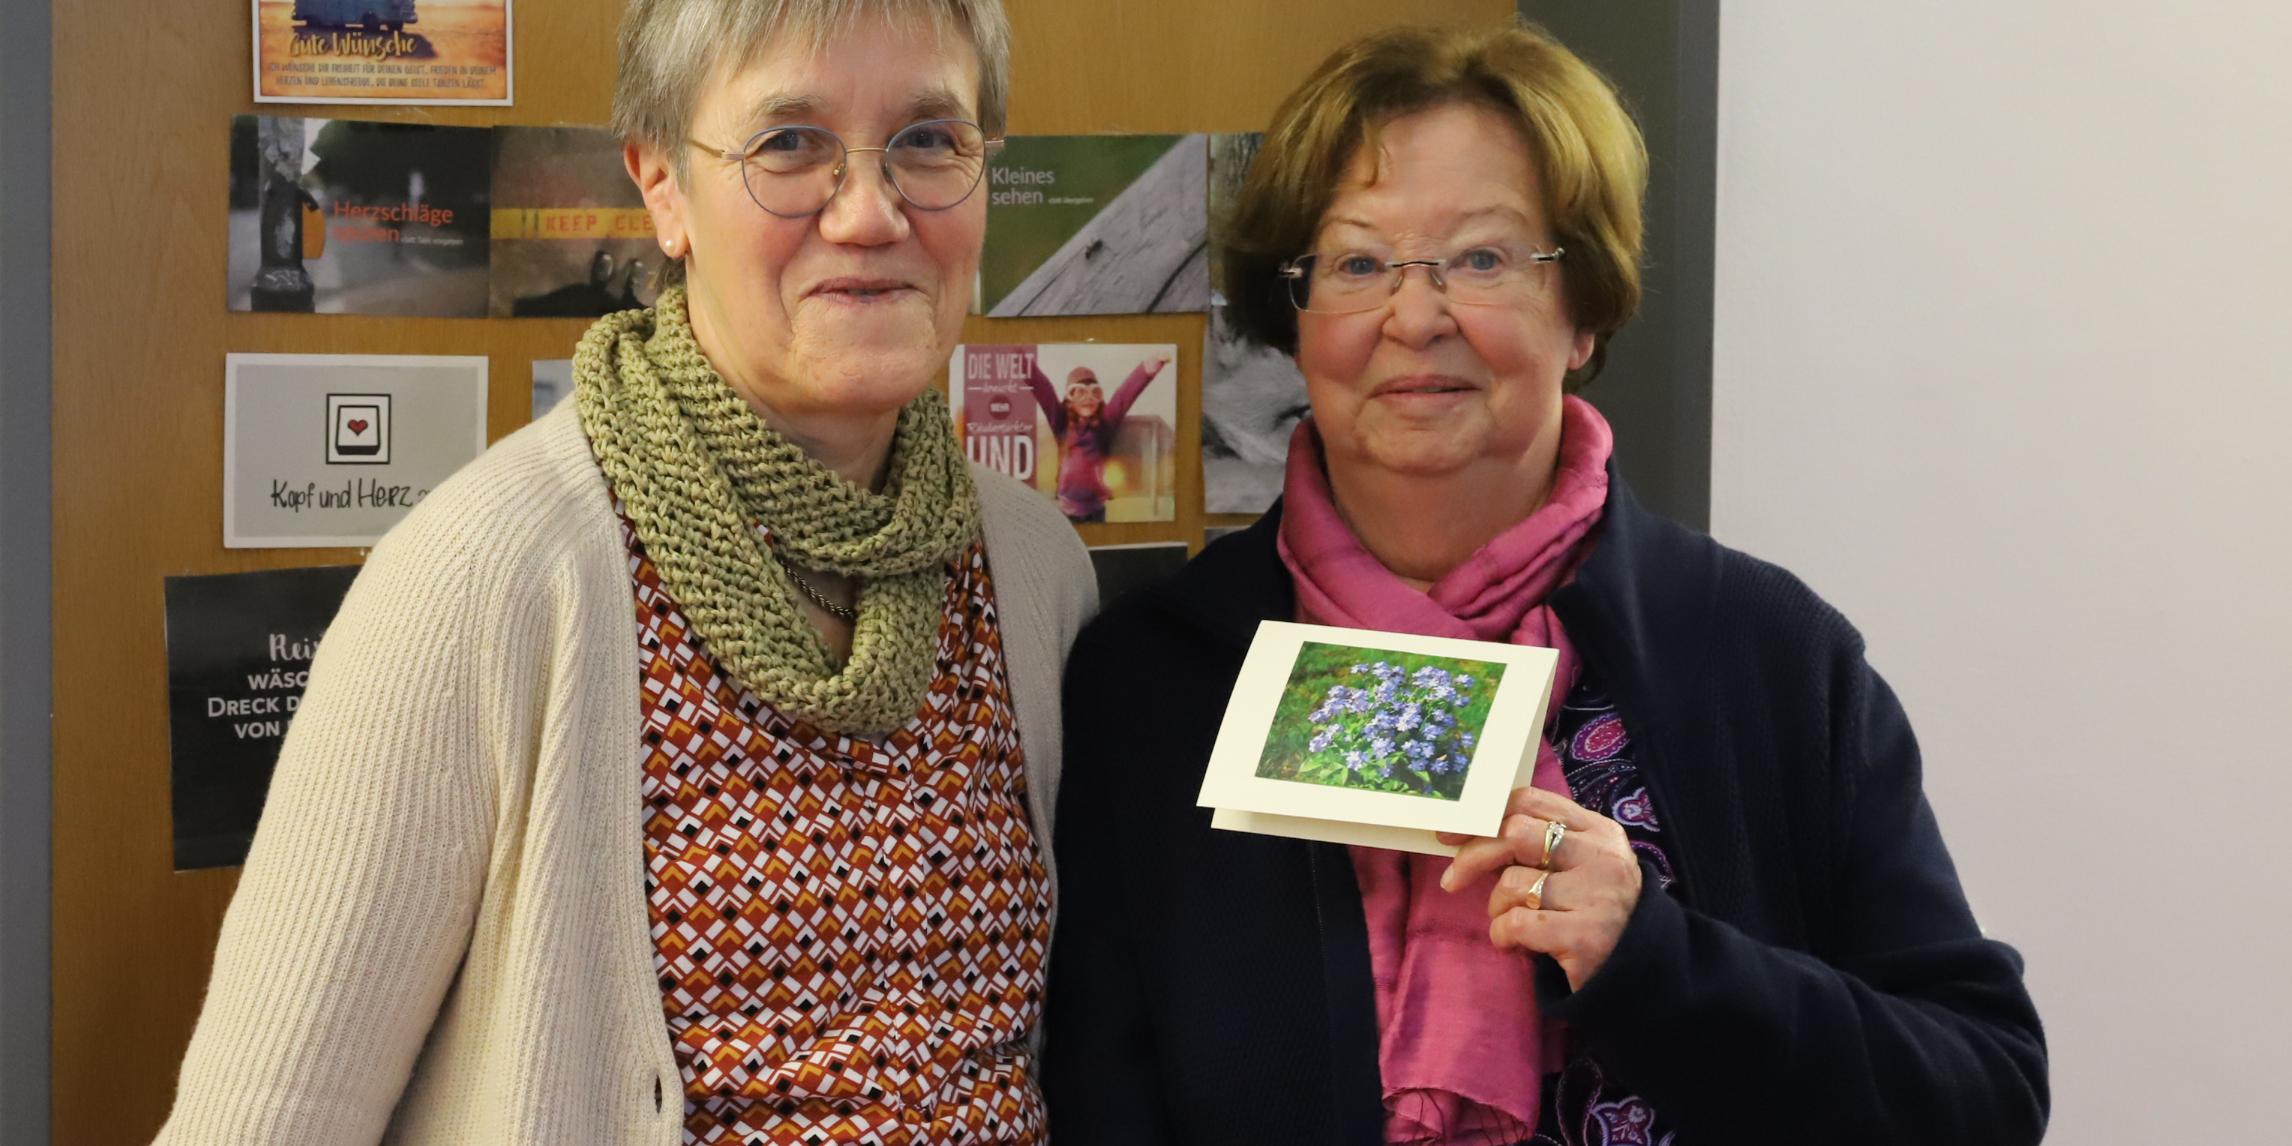 Matthia Walter und Katharina Wieser haben den Seniorenbesuchsdienst vor sieben Jahren mit ins Leben gerufen. Hier präsentieren sie eine der Karten, mit denen sie ihr Angebot damals bei den älteren Frauen und Männern in der Gemeinde bekannt gemacht haben.